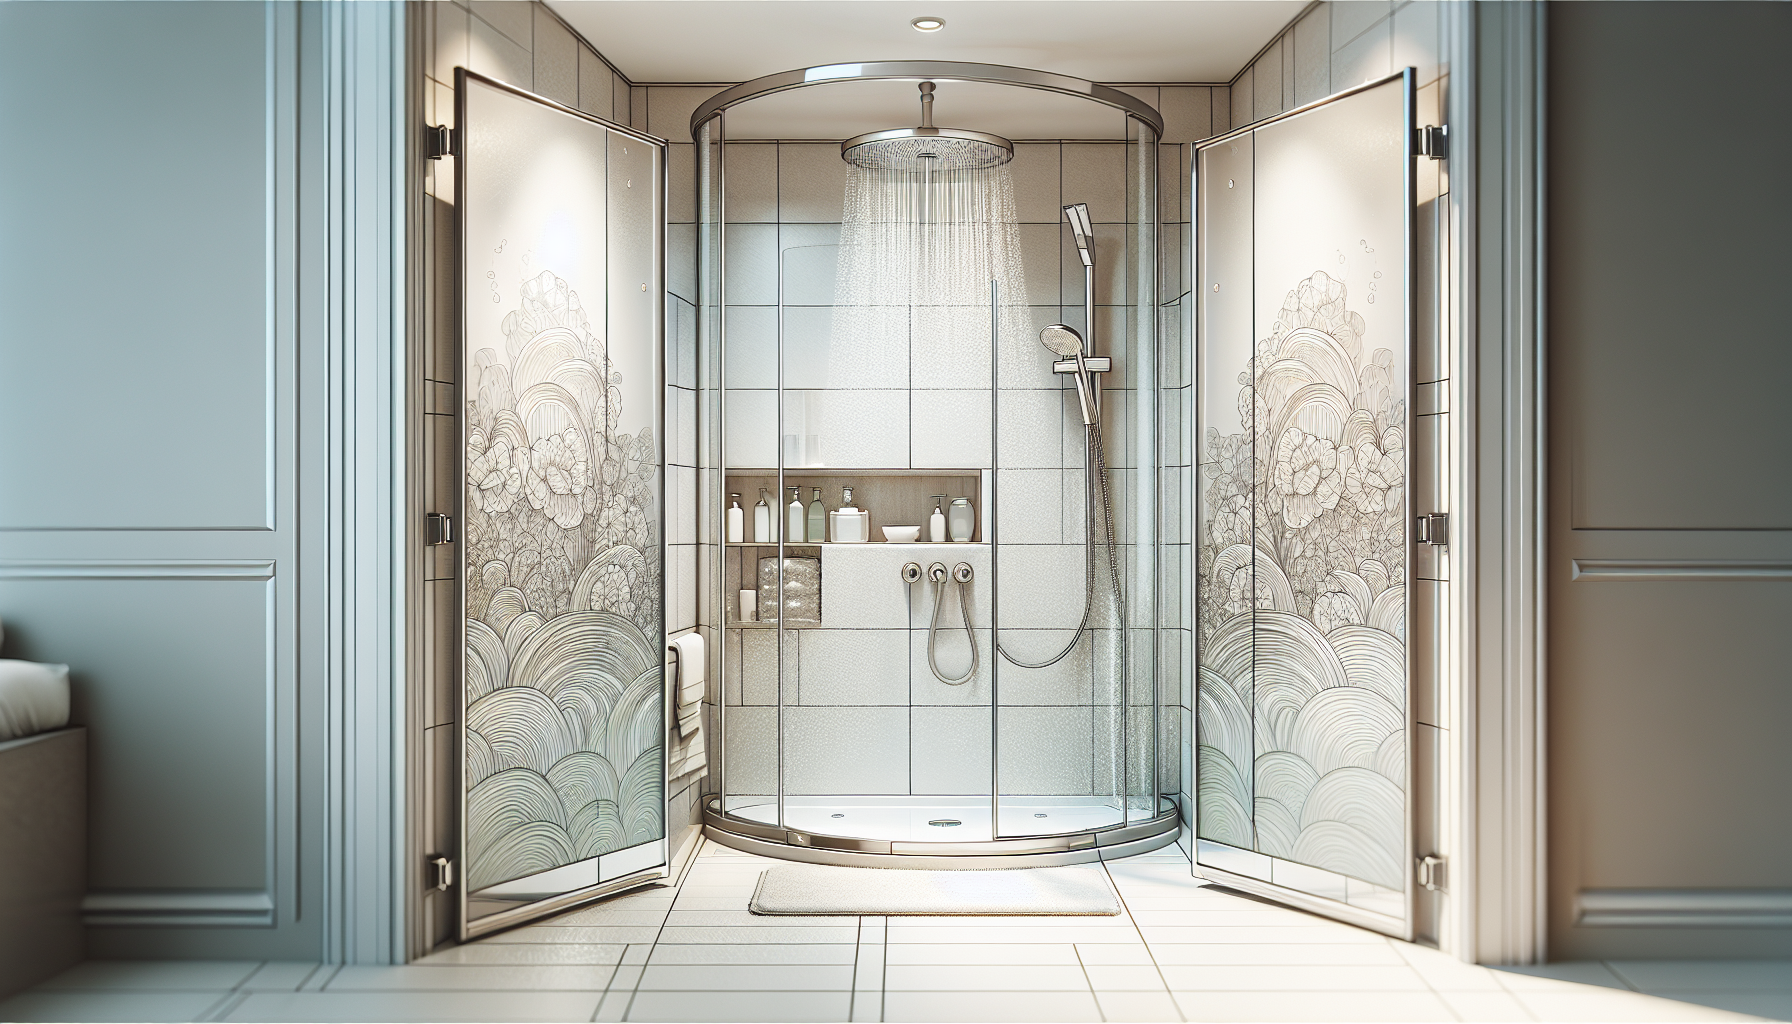 Illustration eines kleinen Badezimmers mit bodengleicher Dusche und Eckdusche